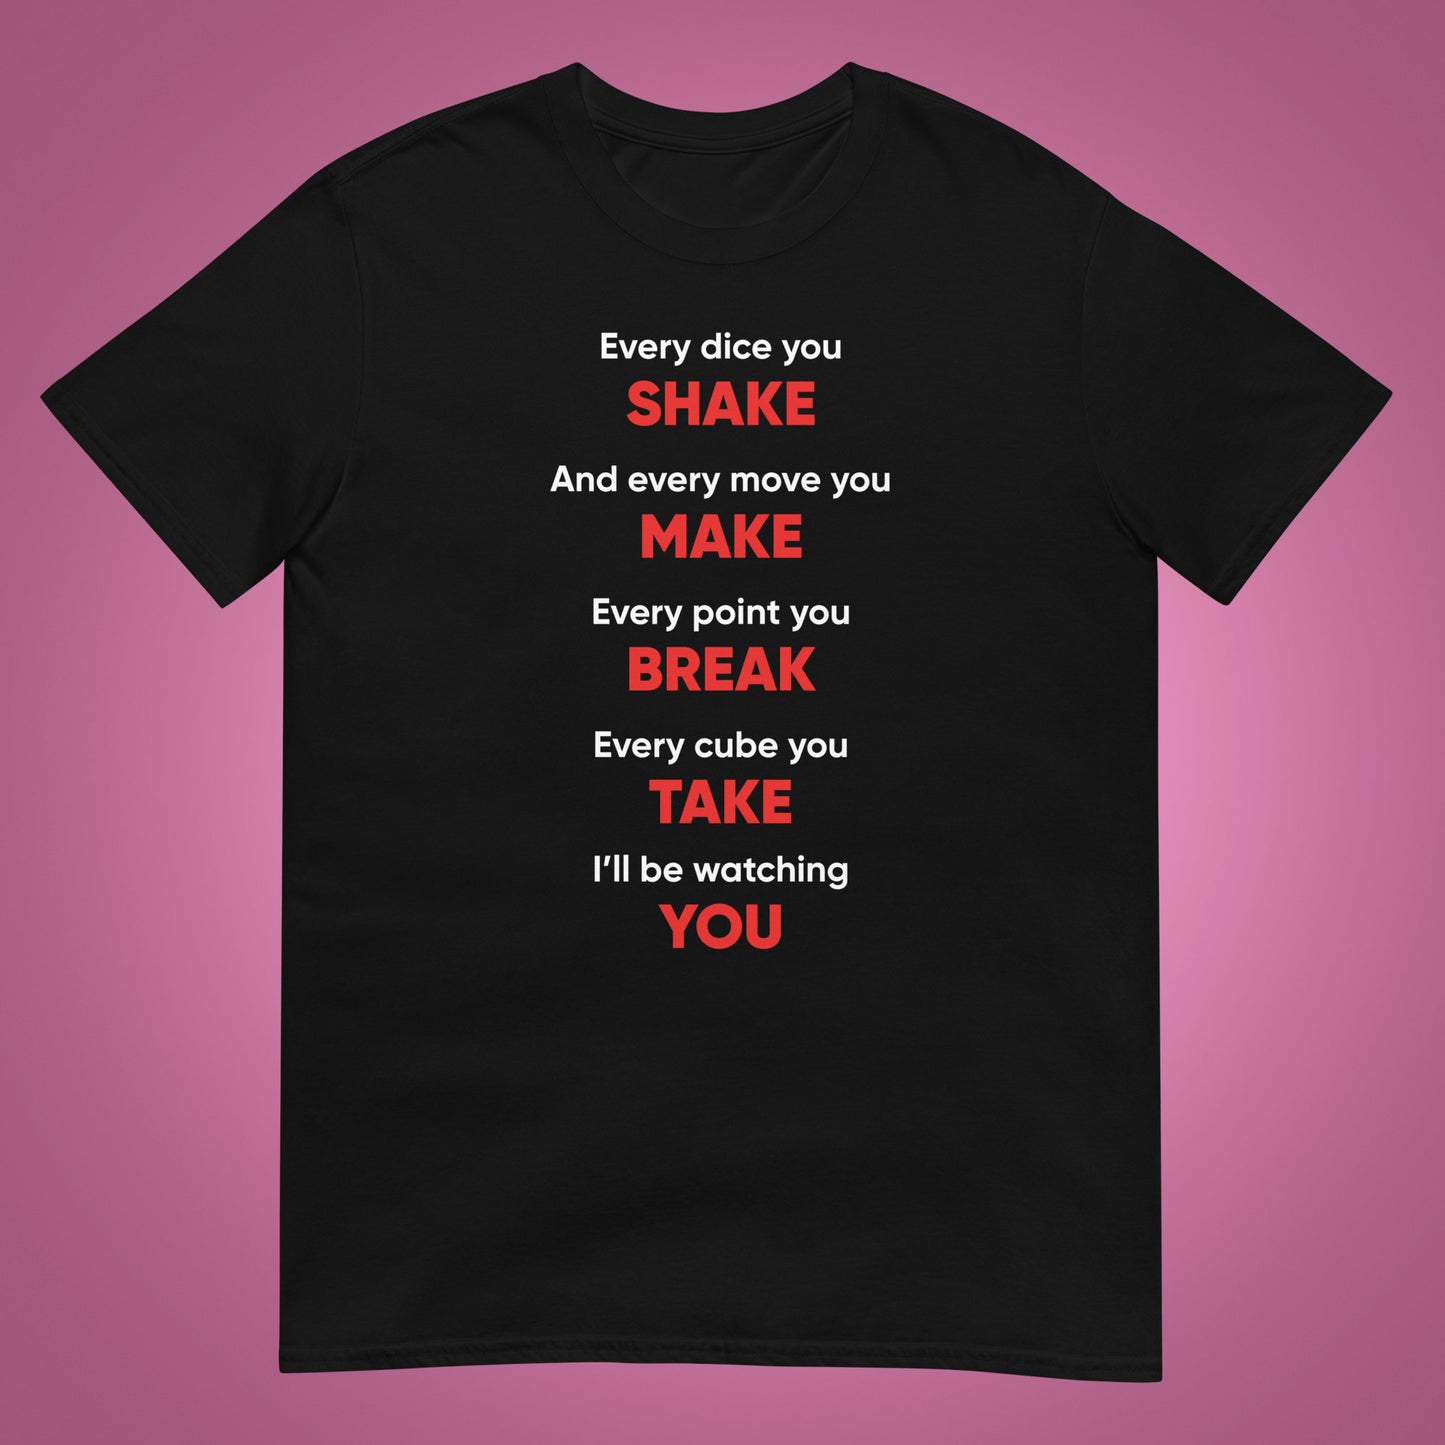 T-shirt "Ogni dado che agiti".